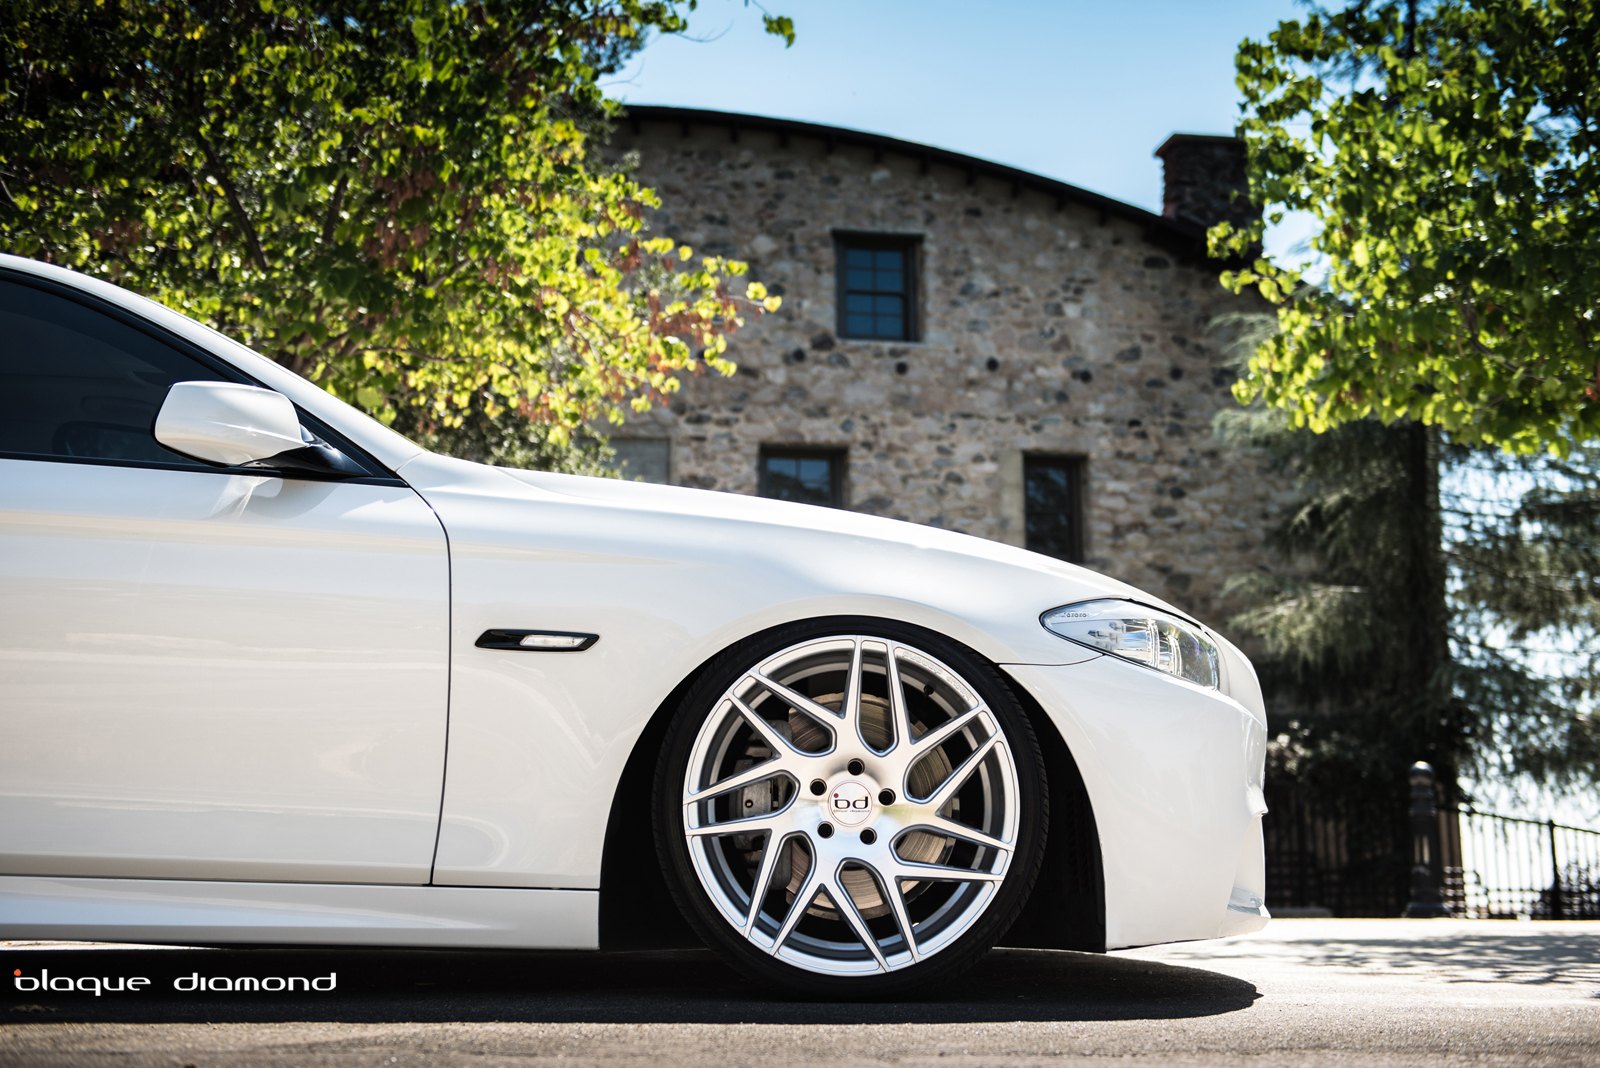 Silver Blaque Diamond Rims on White BMW 5-Series - Photo by Blaque Diamond